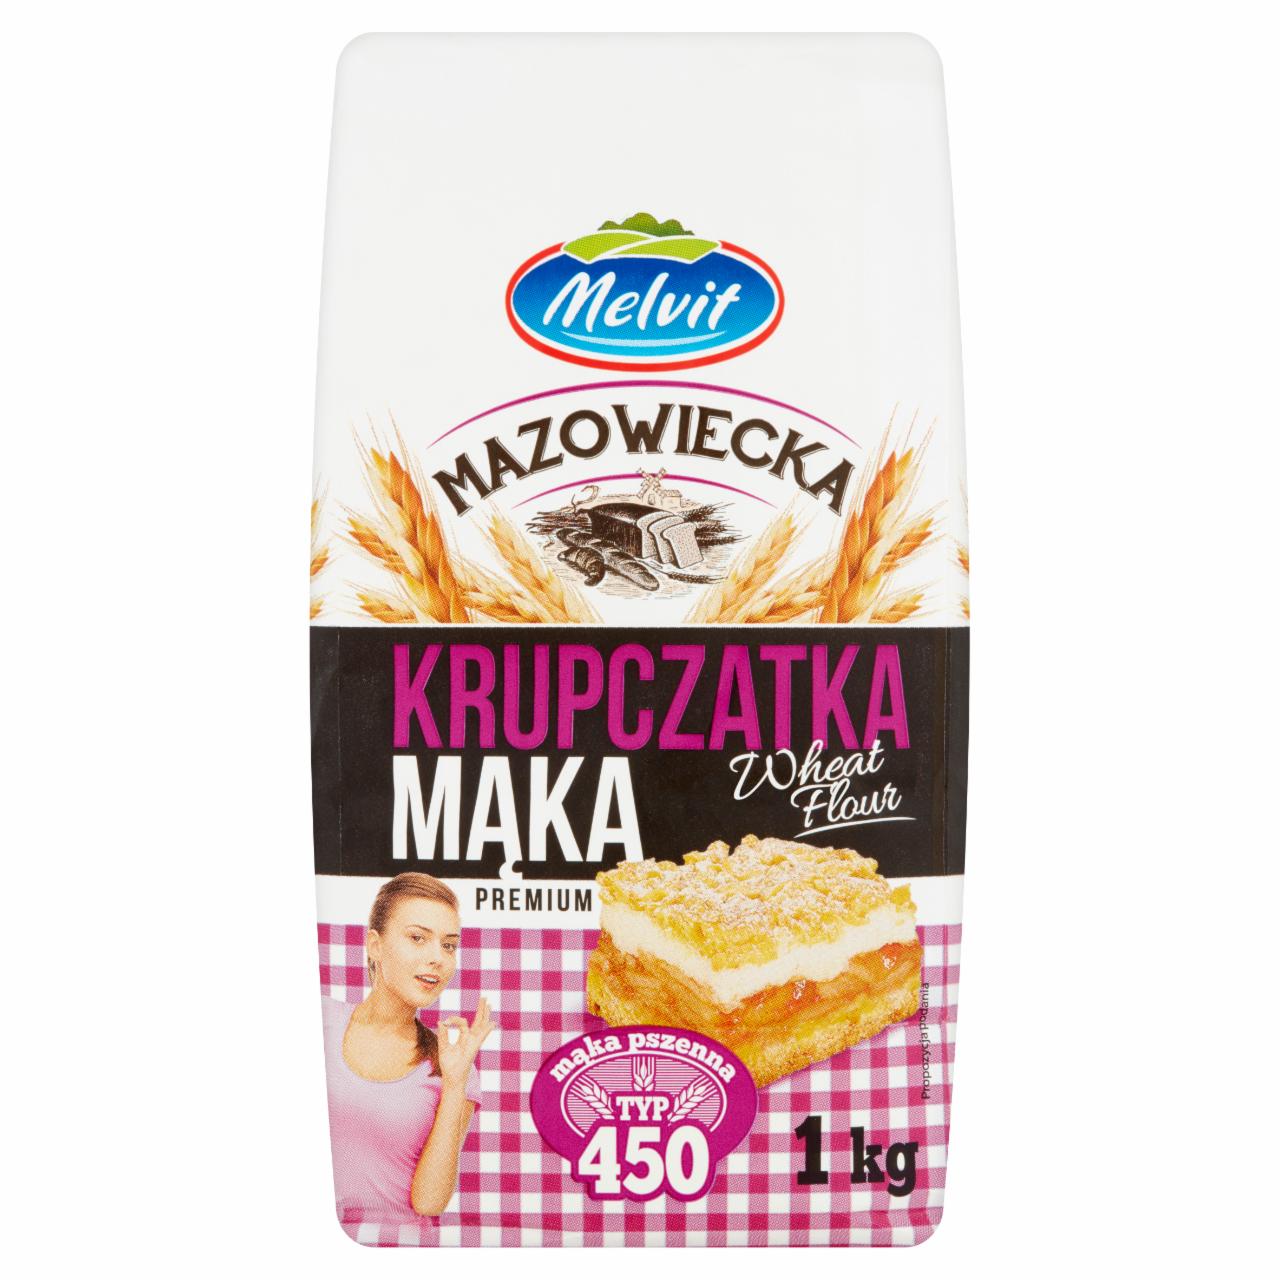 Zdjęcia - Melvit Mazowiecka Mąka krupczatka pszenna typ 450 1 kg